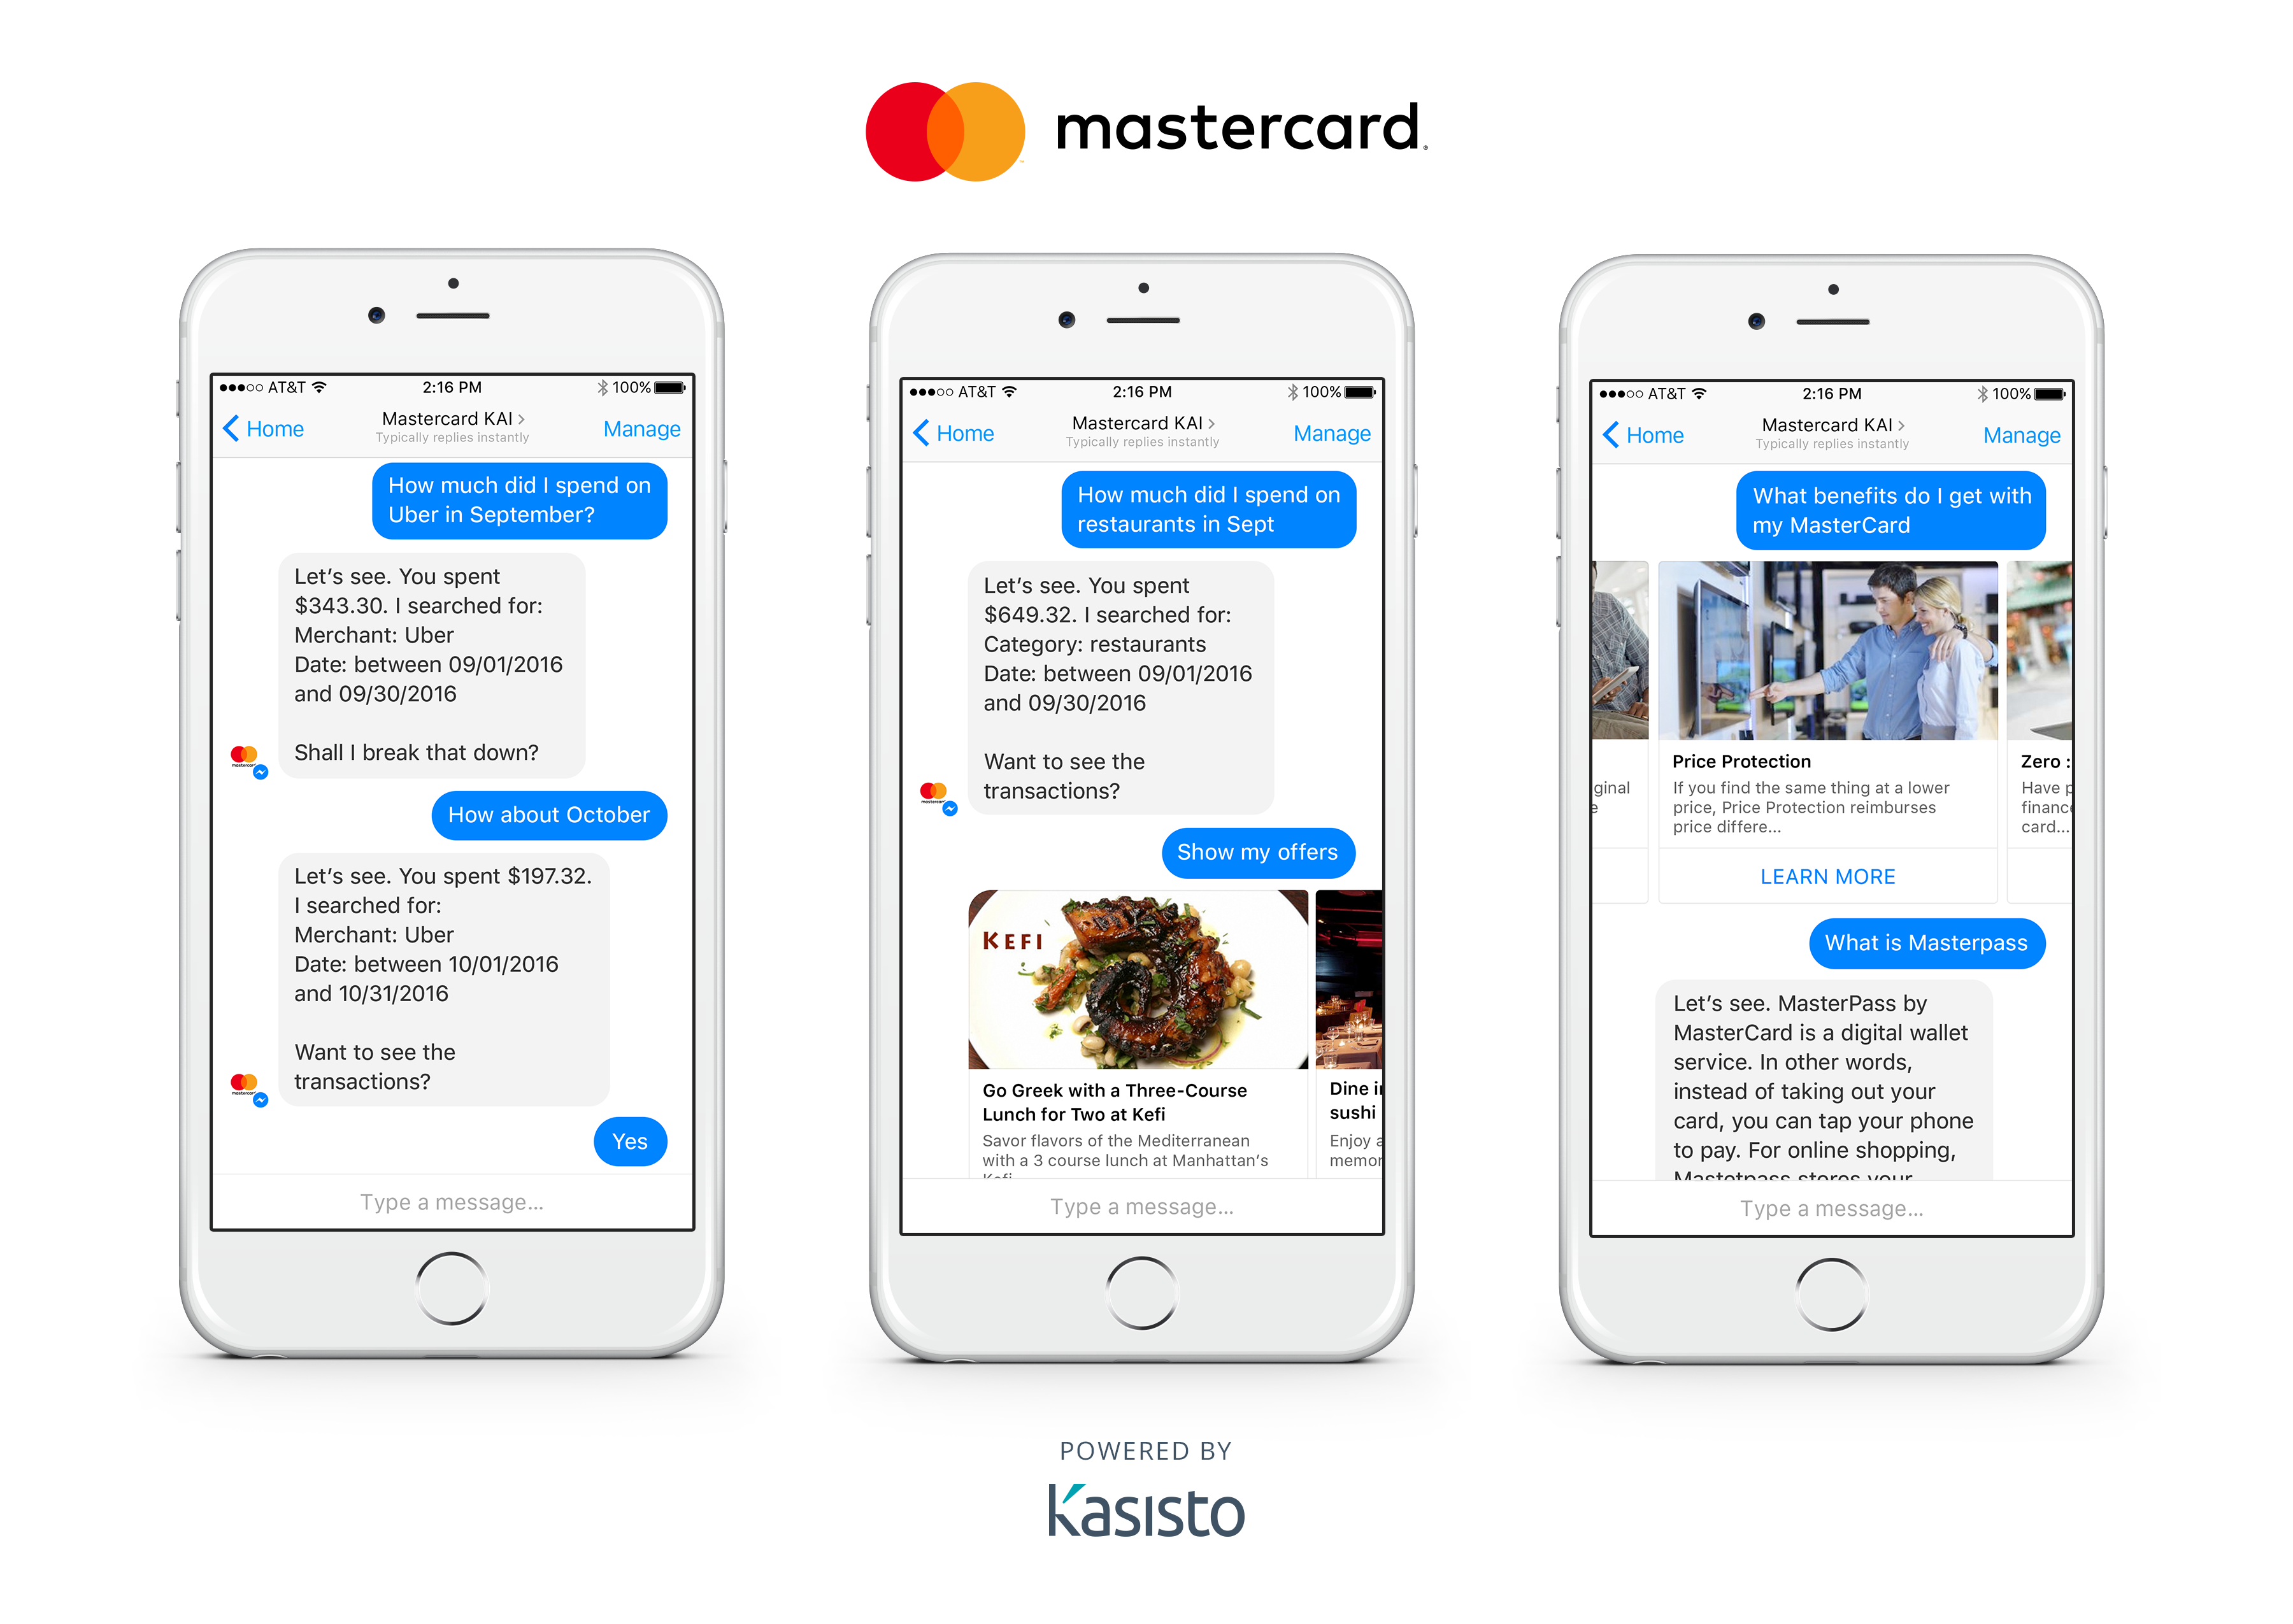 Mastercard chatbot